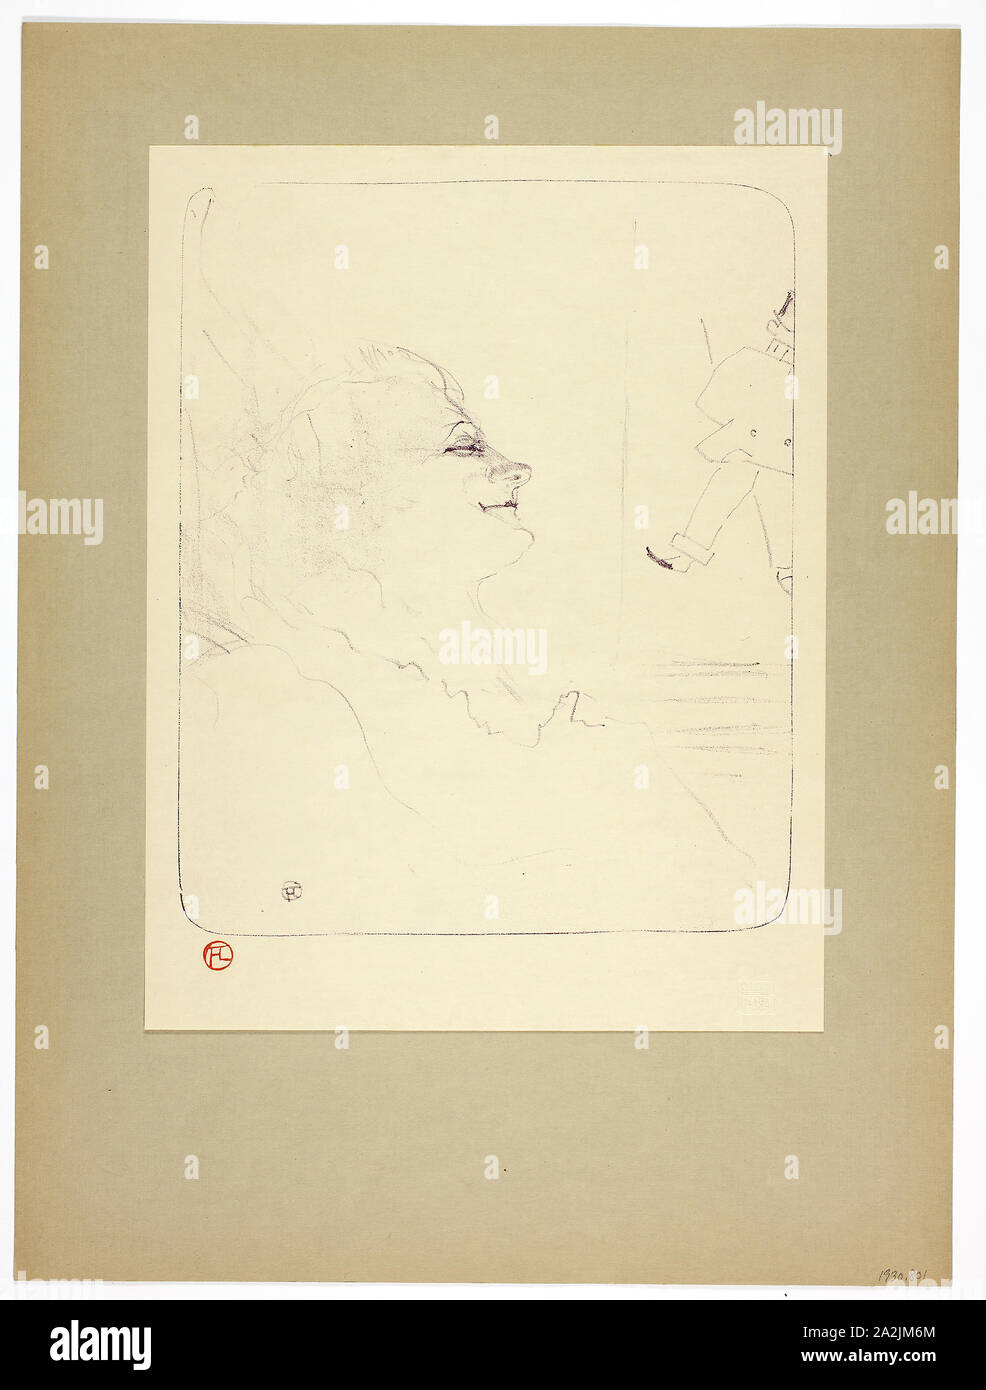 Pessima, Platte drei von Yvette Guilbert, 1898, Gedruckt 1930, Henri de Toulouse-Lautrec (Französisch, 1864-1901), von Westminster Presse (Englisch, 20. Jahrhundert), das von der Ernest Braun & Phillips (Englisch, 20. Jahrhundert), Frankreich, Lithographie (Kreide) in lila oder violett Veröffentlicht am Creme webte Papier mit Scharnieren an den oberen Ecken zu grau-braun wob Papier, 297 x 242 mm (Bild), 349 × 268 mm (Primary Support), 497 × 371 mm (sekundäre Unterstützung Stockfoto